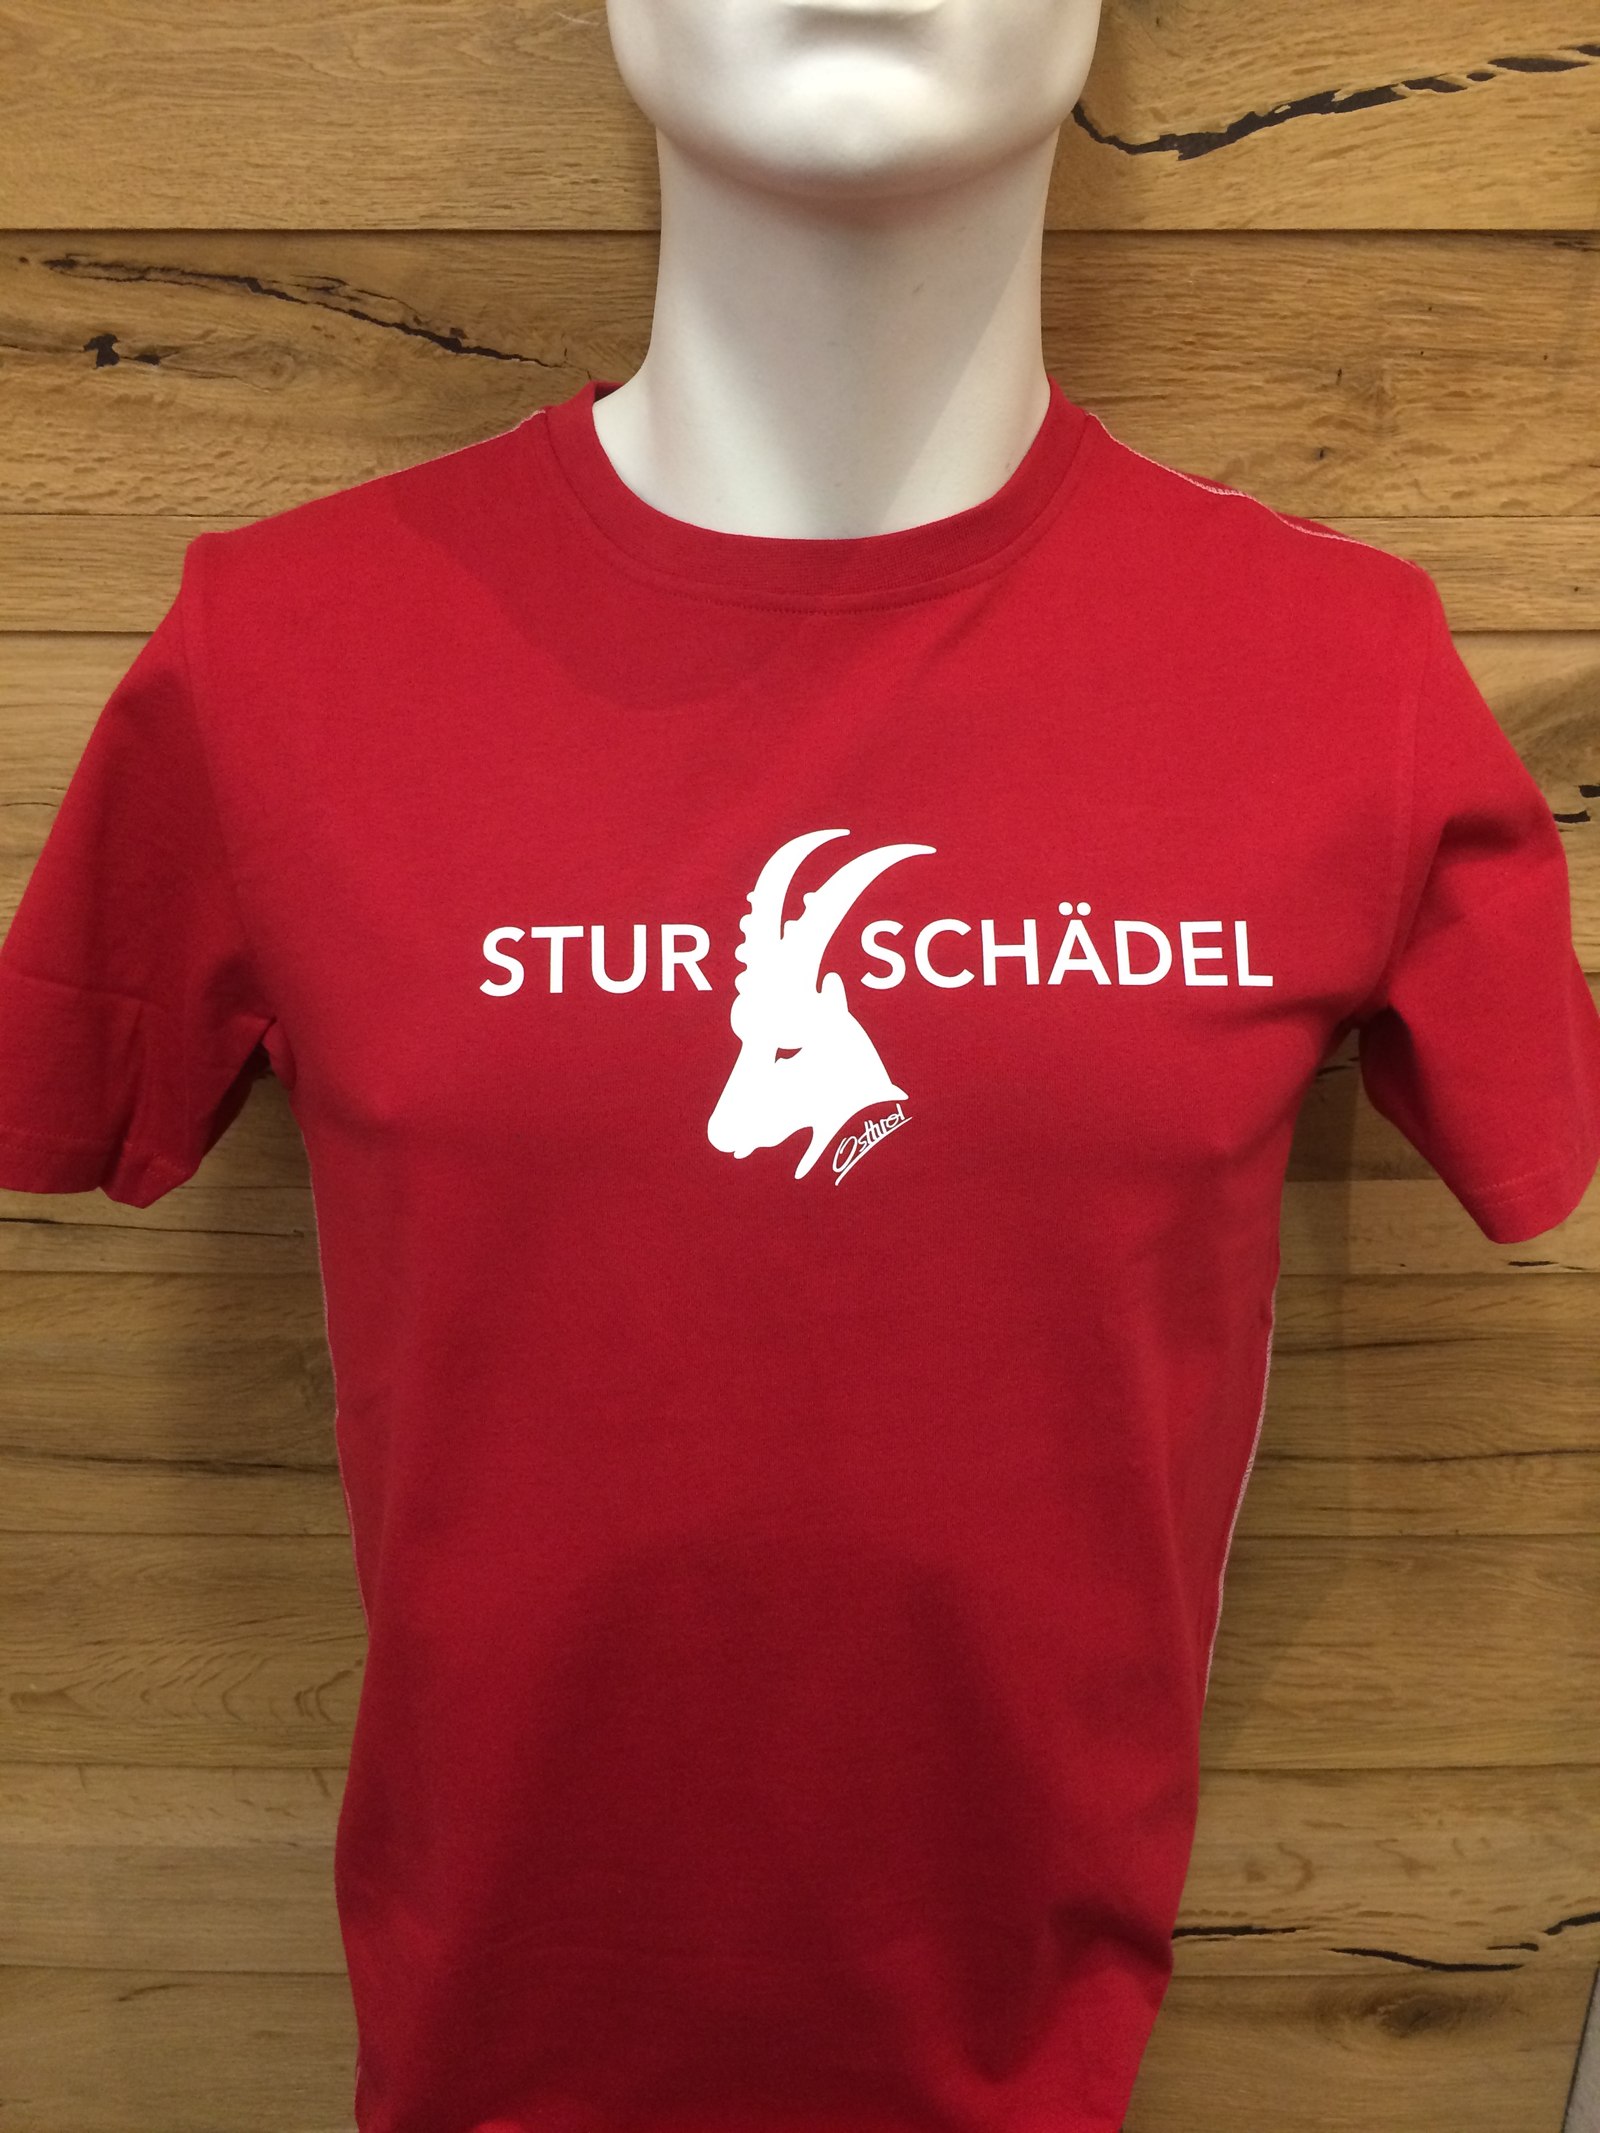 Herren T-Shirt "Sturschädel" rot